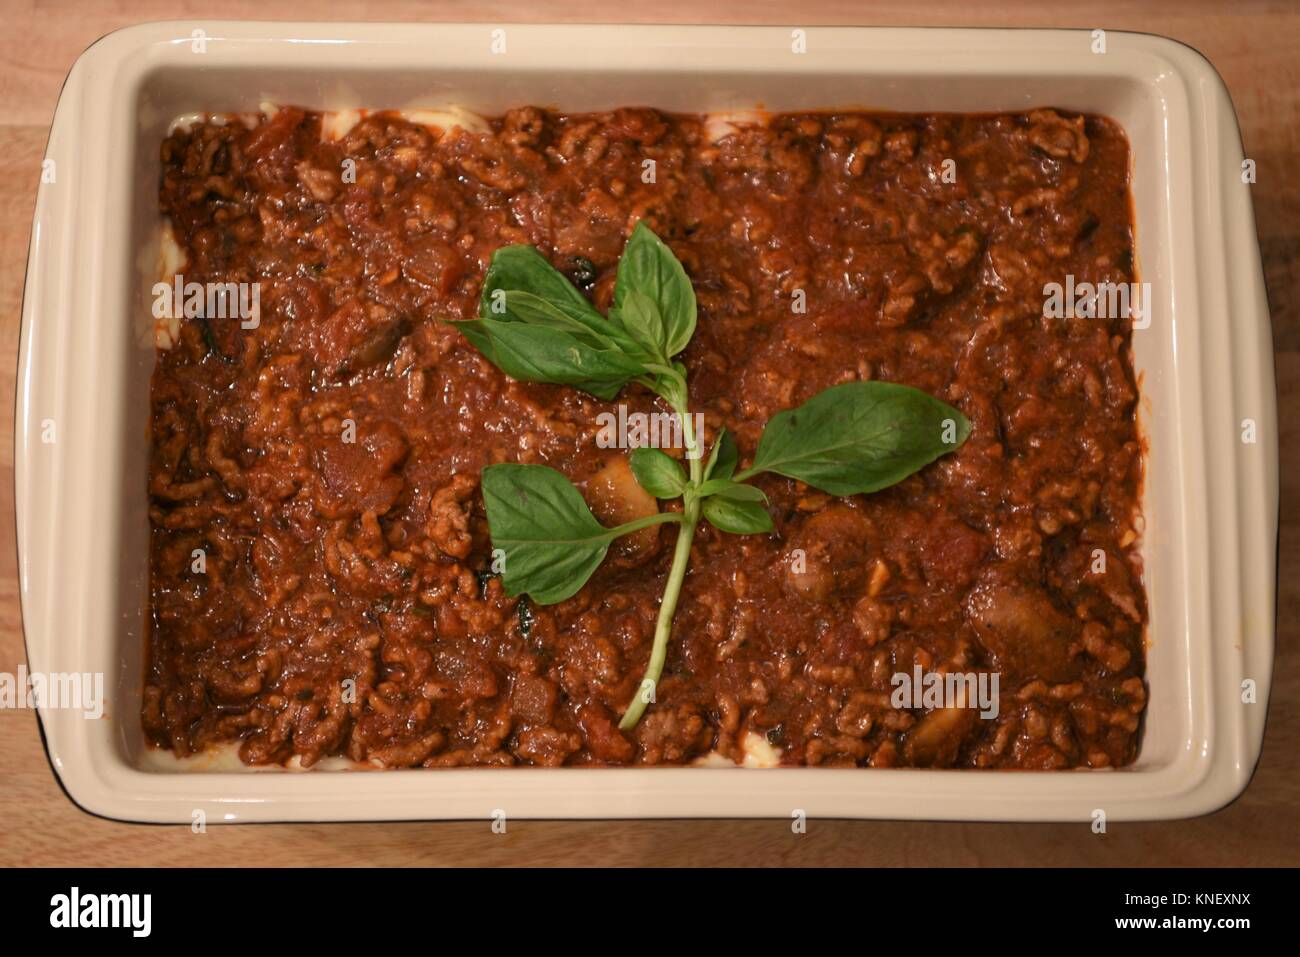 La cottura del cibo fotografia immagine di un piatto di carne italiana la pasta le lasagne con le foglie di basilico per una famiglia pasto serale o cena Foto Stock